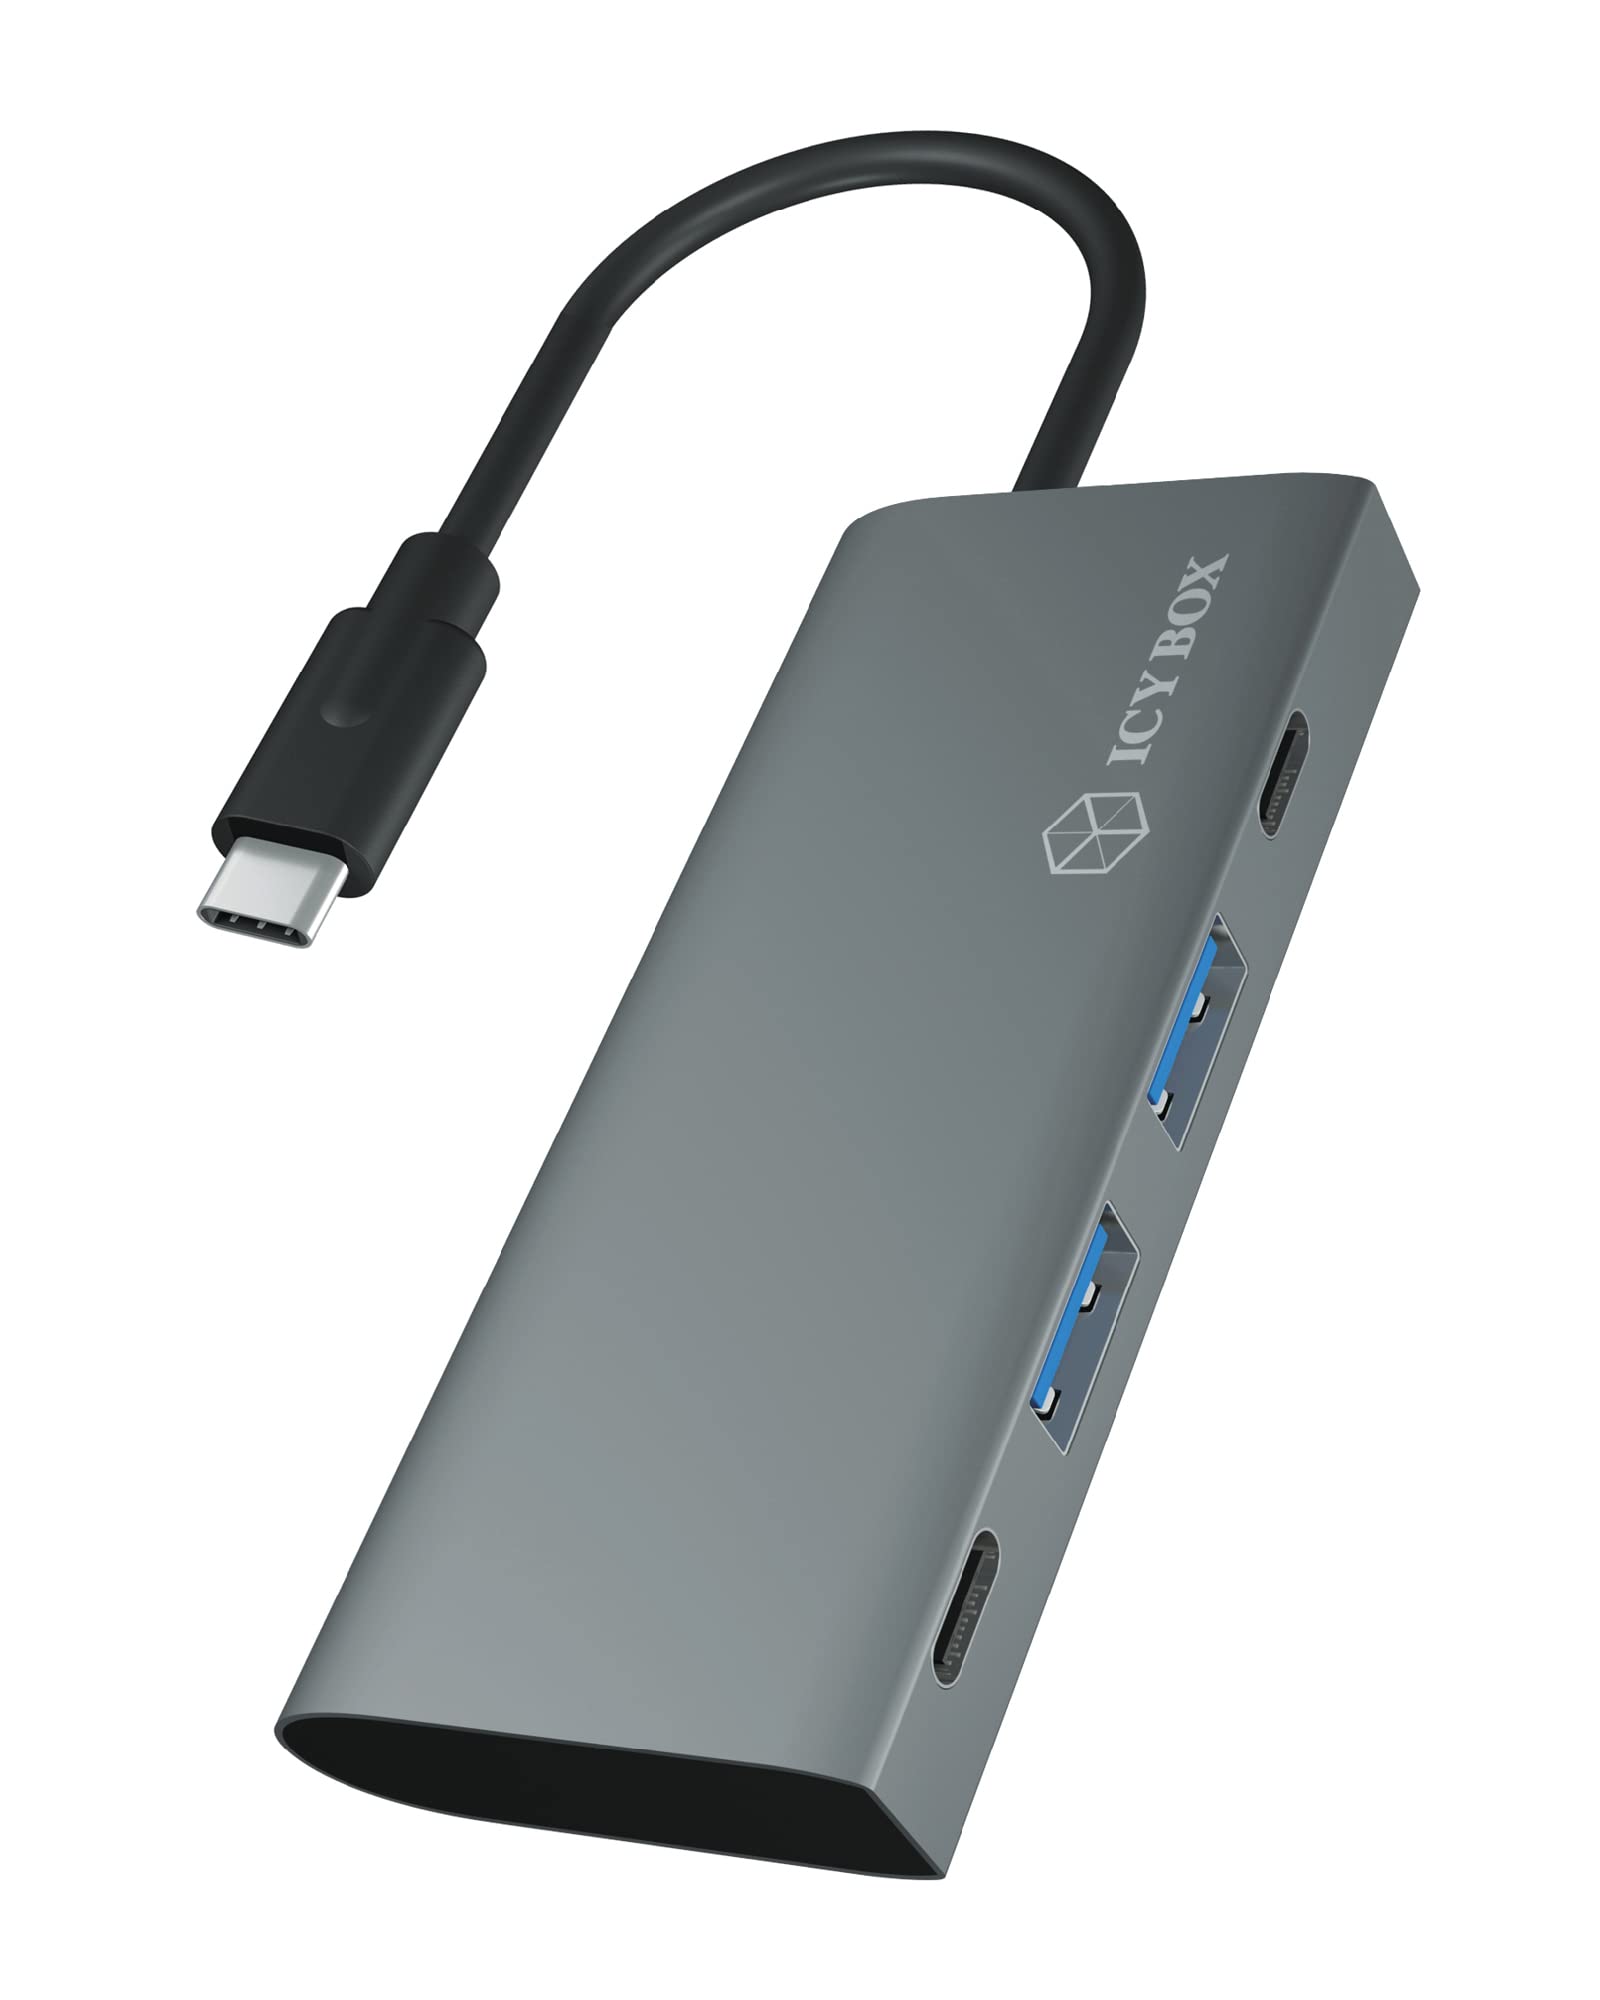 ICY BOX USB Hub 3.1 Gen 2 mit 4 USB Ports, USB 3.1 Gen2 10 Gbit/s, USB-C Verbindung, integriertes Kabel, Anthrazit, Aluminium, IB-HUB1428-C31